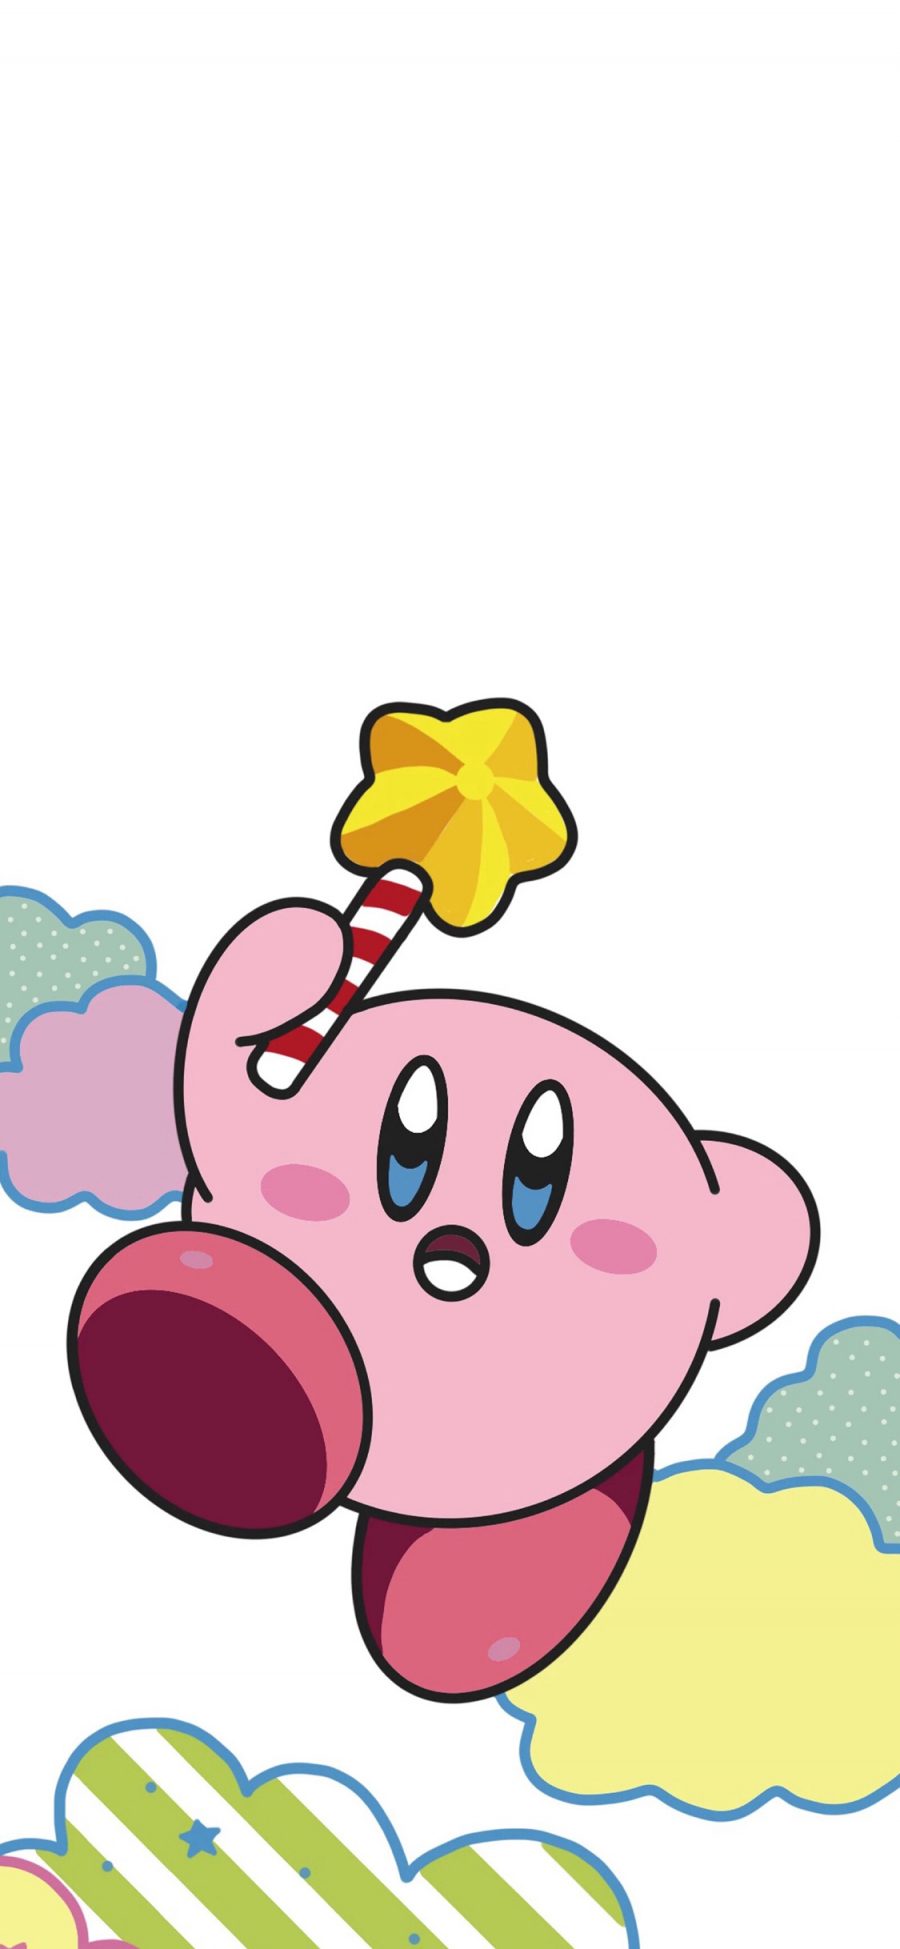 [2436×1125]皮卡丘 精灵 星之卡比 Kirby 粉色 苹果手机动漫壁纸图片